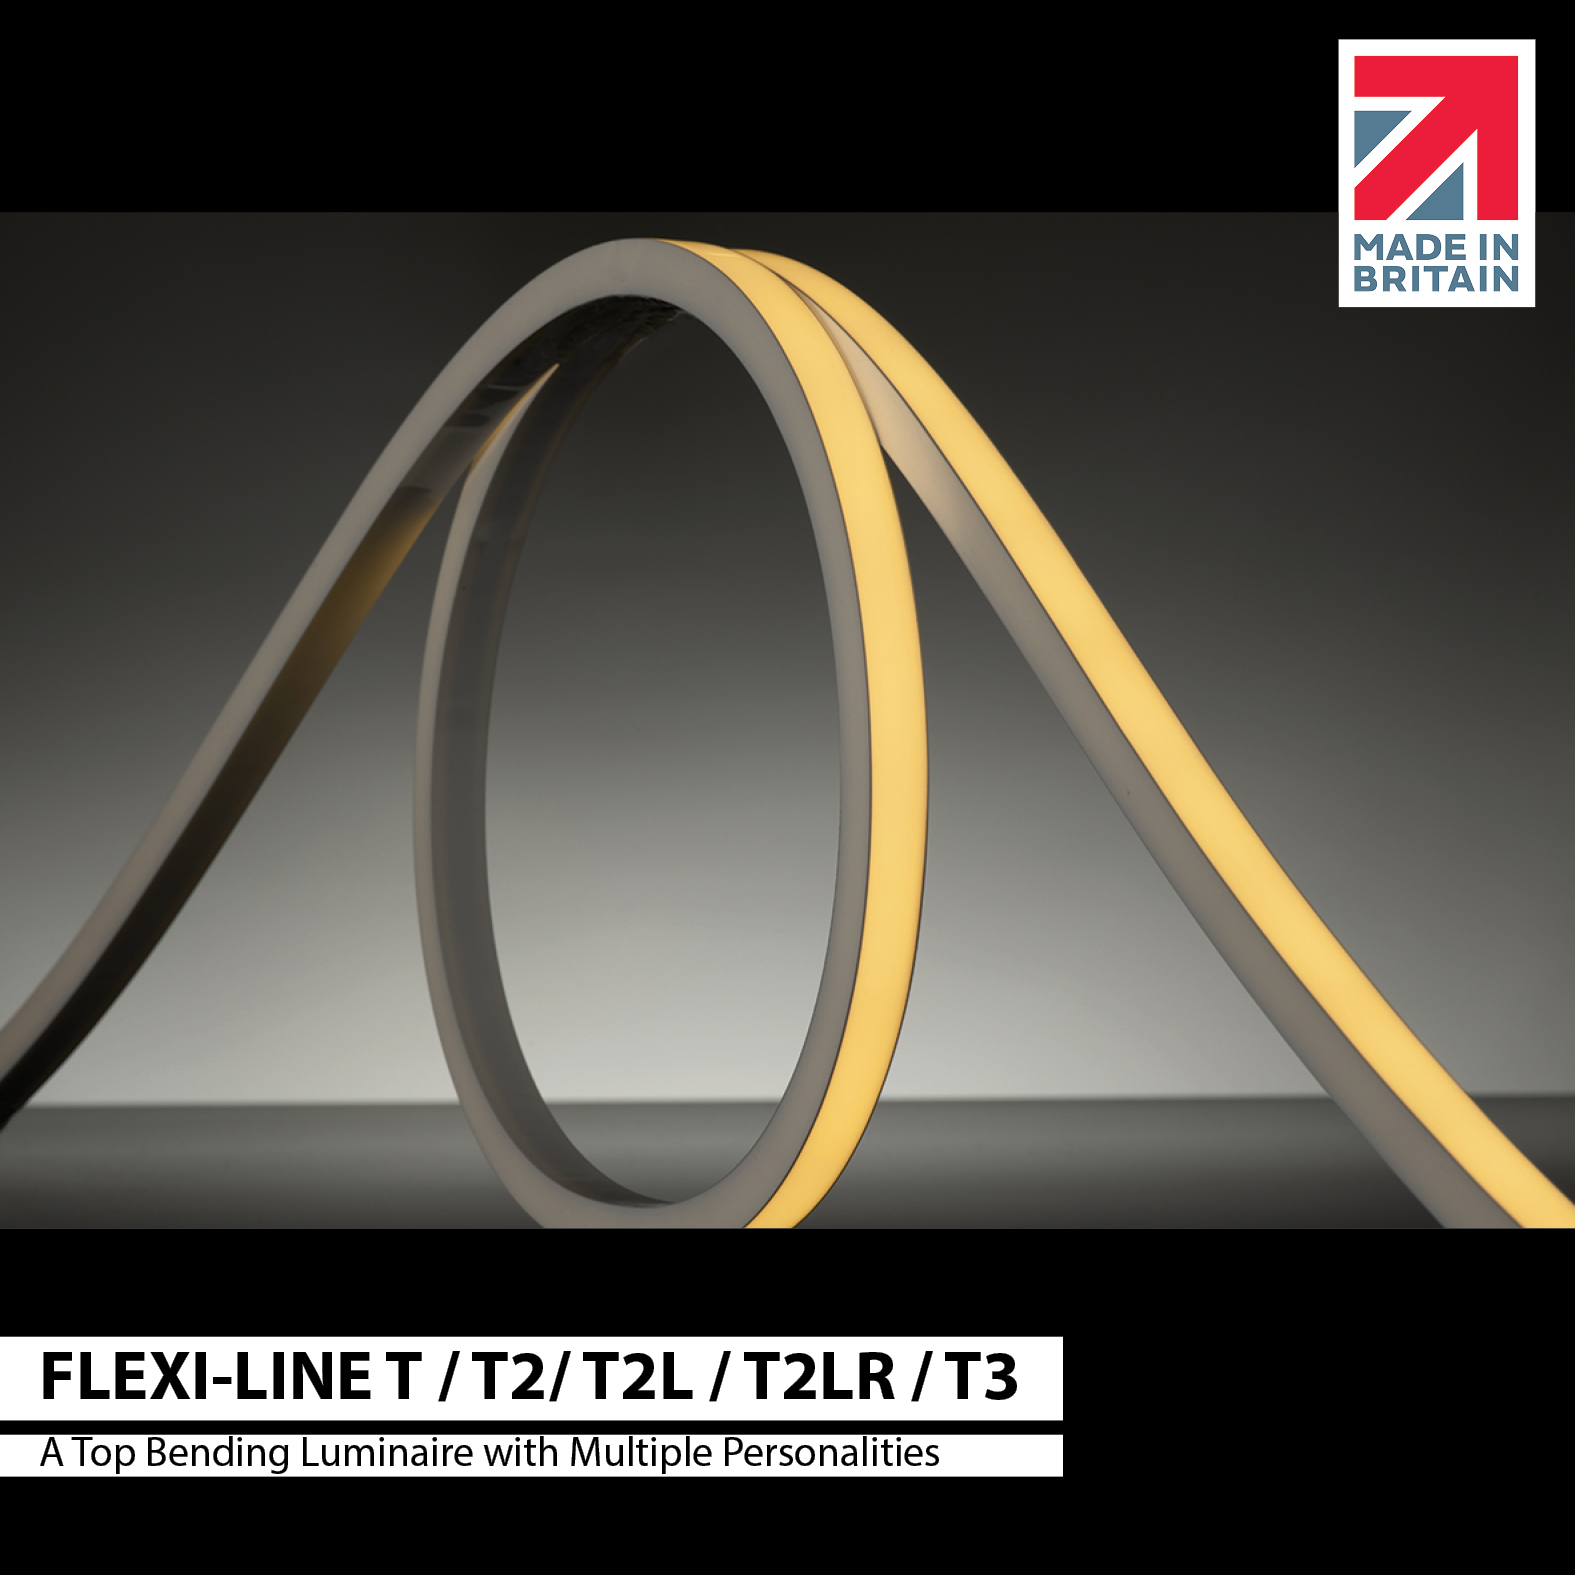 NEW: Flexi-Line T2, T2L & T2LR